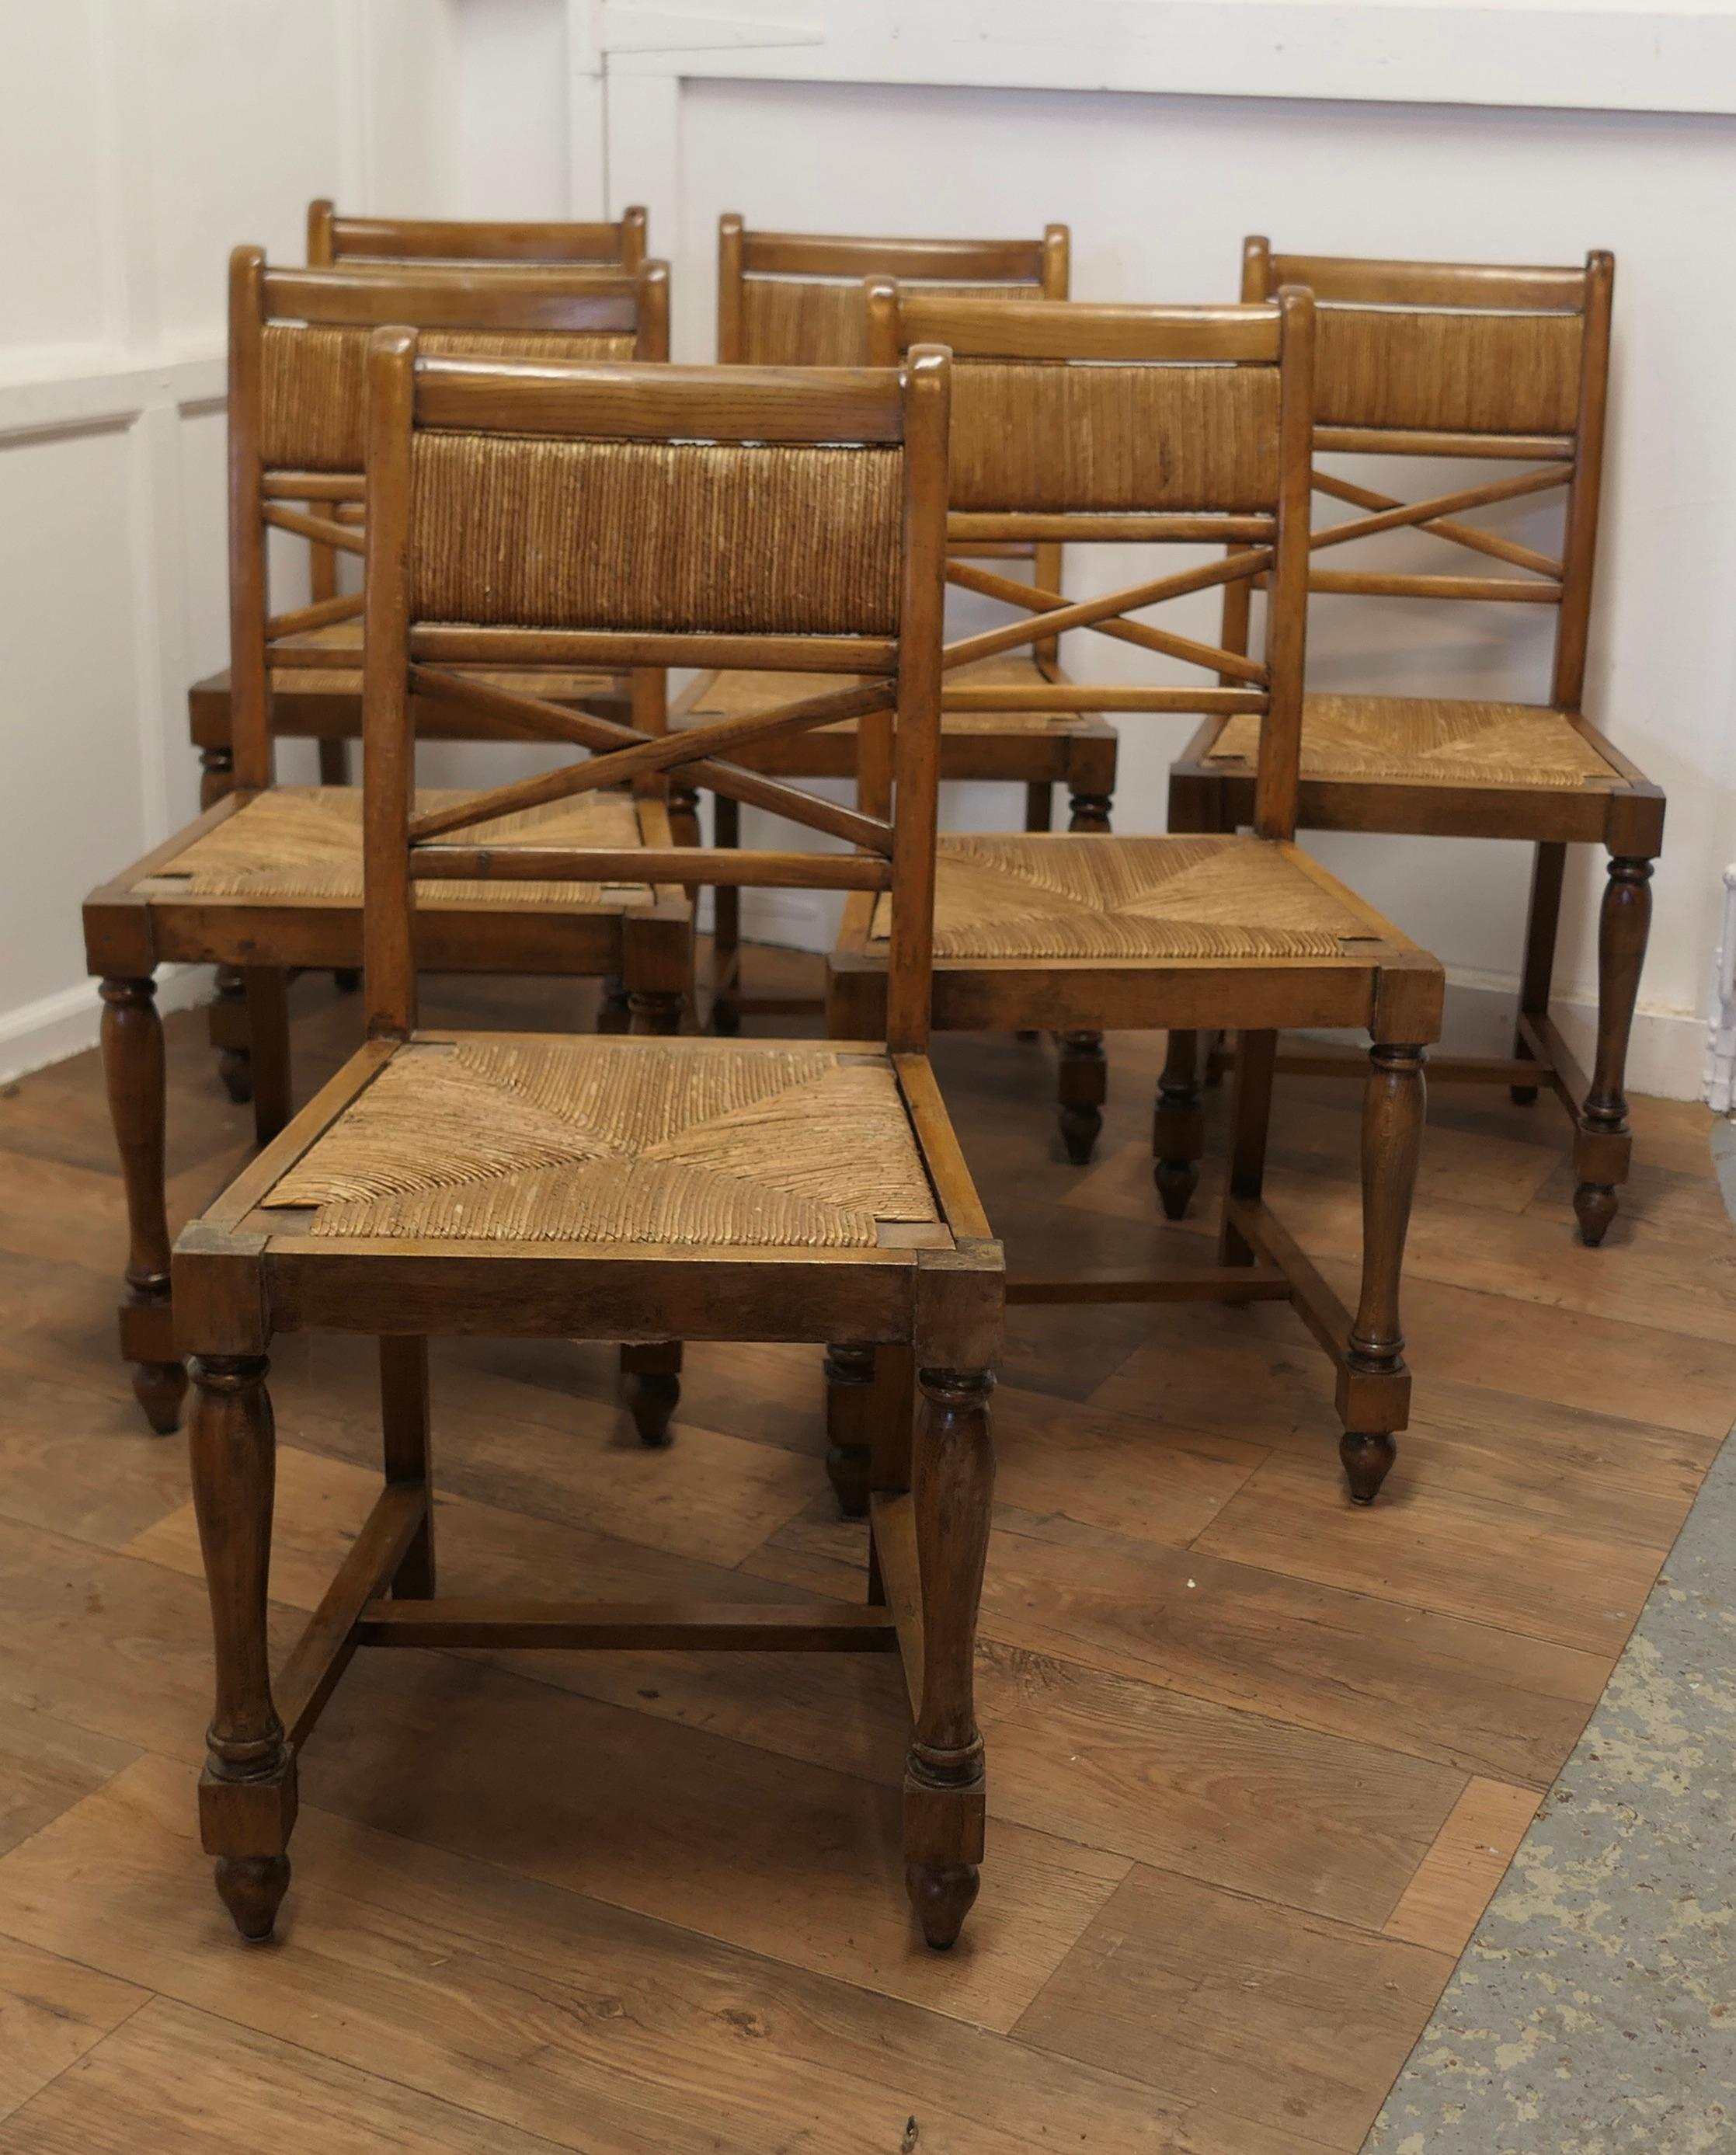 Ensemble de 6 chaises de salle à manger en Oak Oak doré français 

Il s'agit d'un très bel ensemble de chaises en chêne doré, 6 au total.
Les chaises sont de conception classique et sont fabriquées en chêne massif dans une belle couleur.
Les chaises